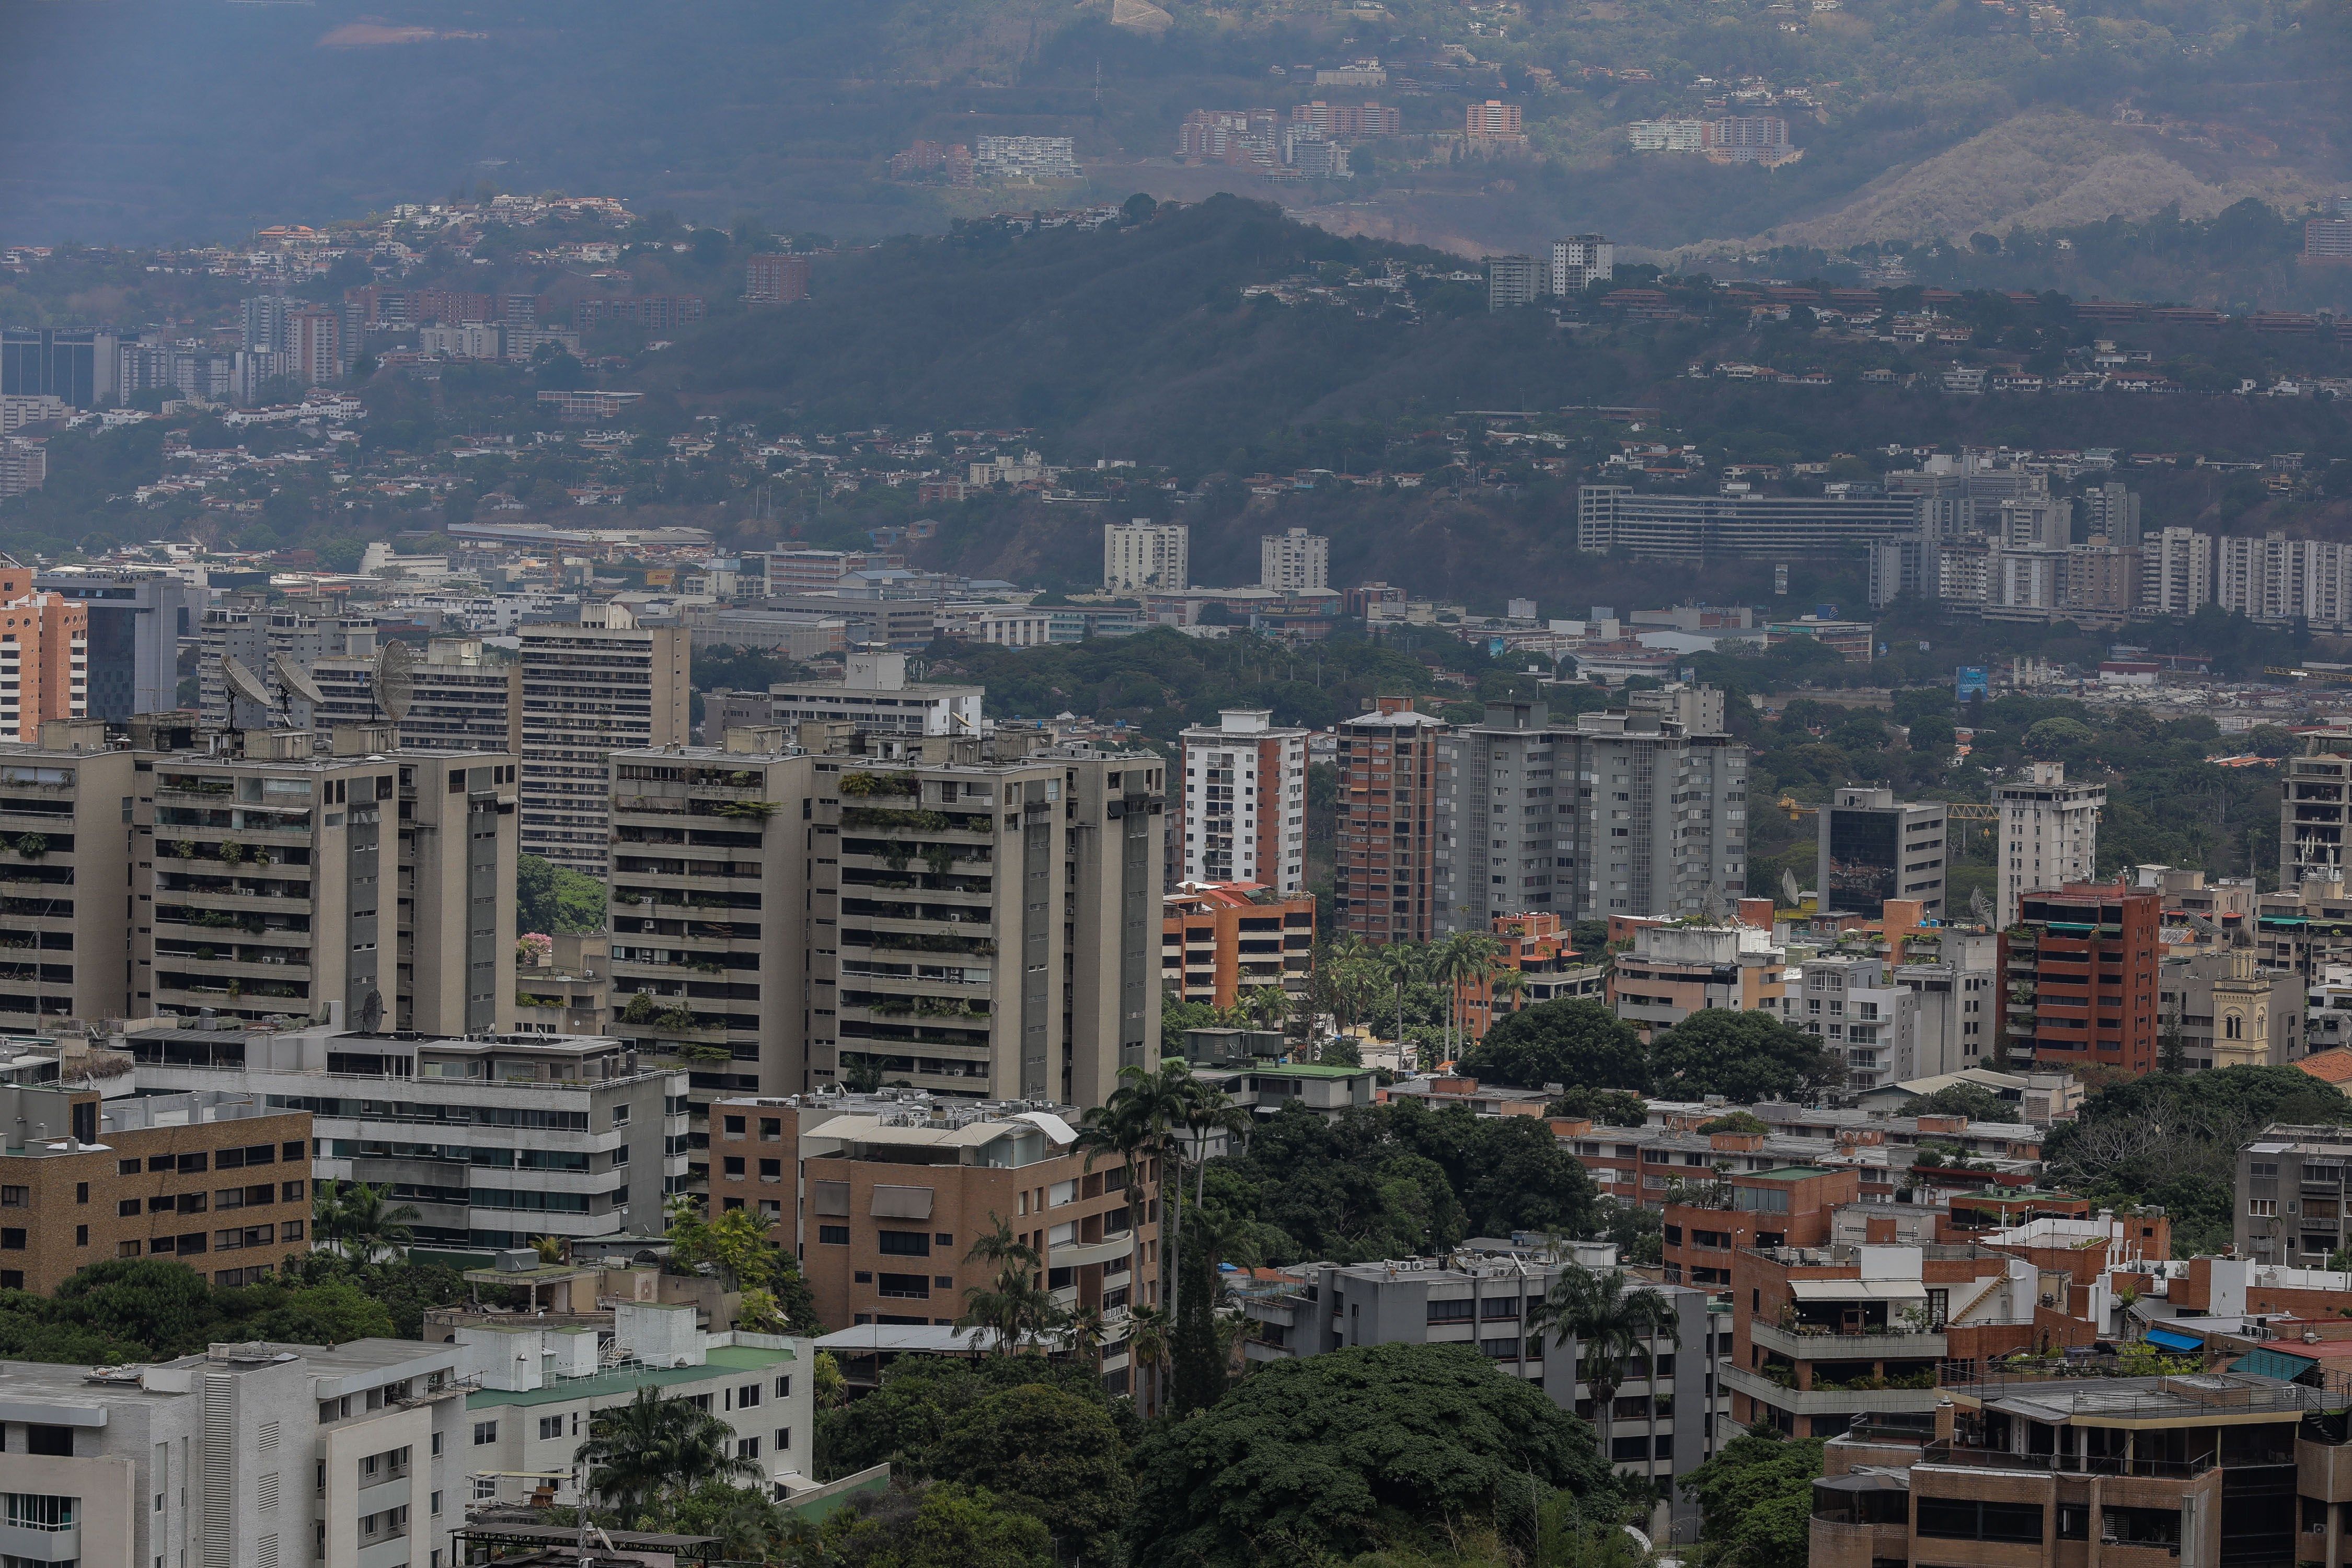 Oferta de viviendas nuevas en Caracas es de solo mil unidades y a precios hundidos